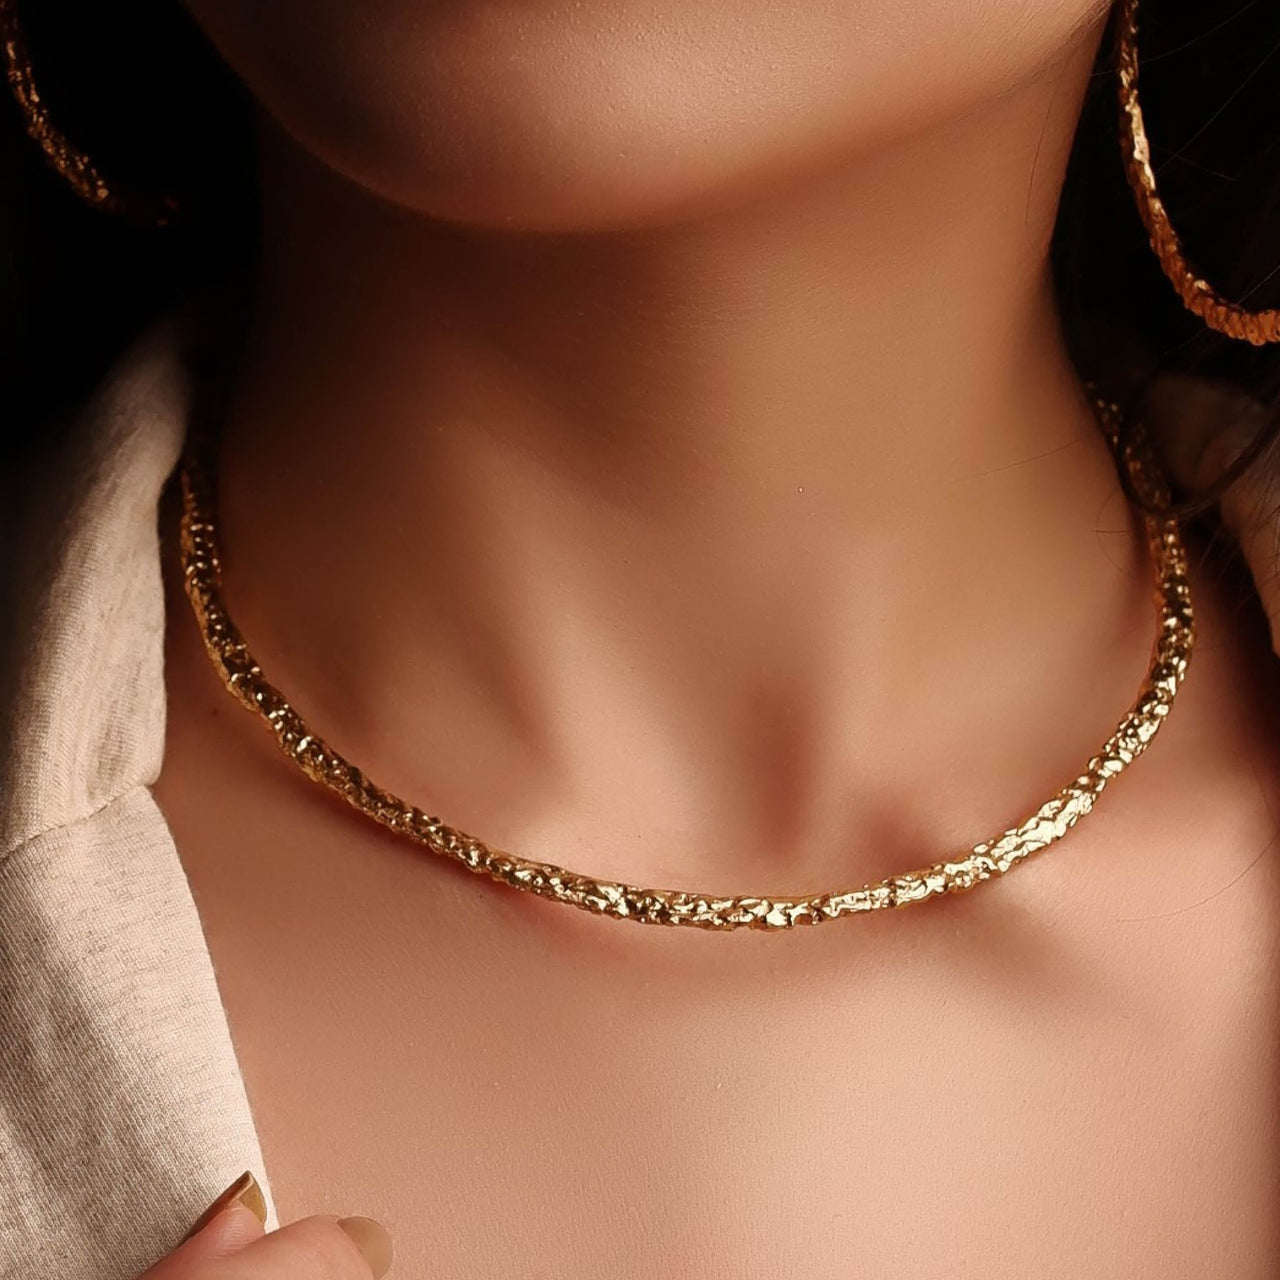 Stylish and dazzling gold neck cuff choker